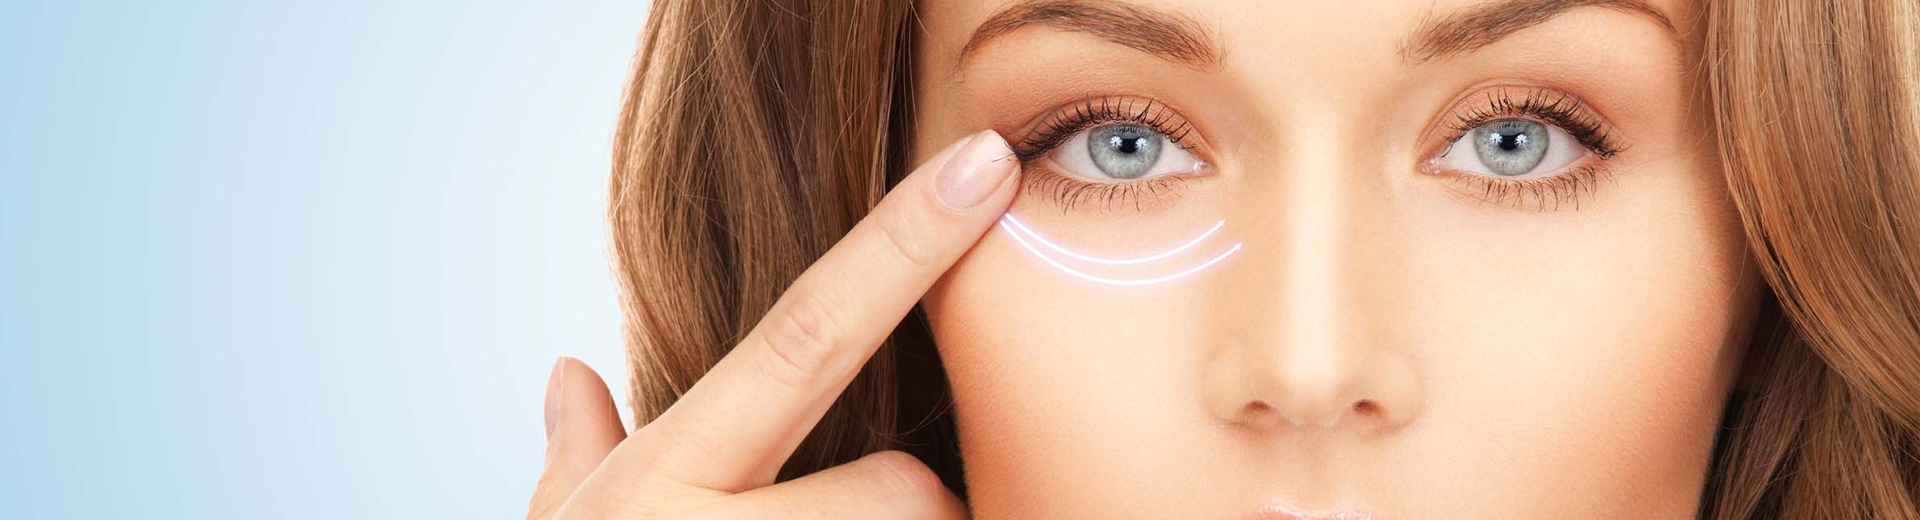 Верхняя блефаропластика – молодость ваших глаз